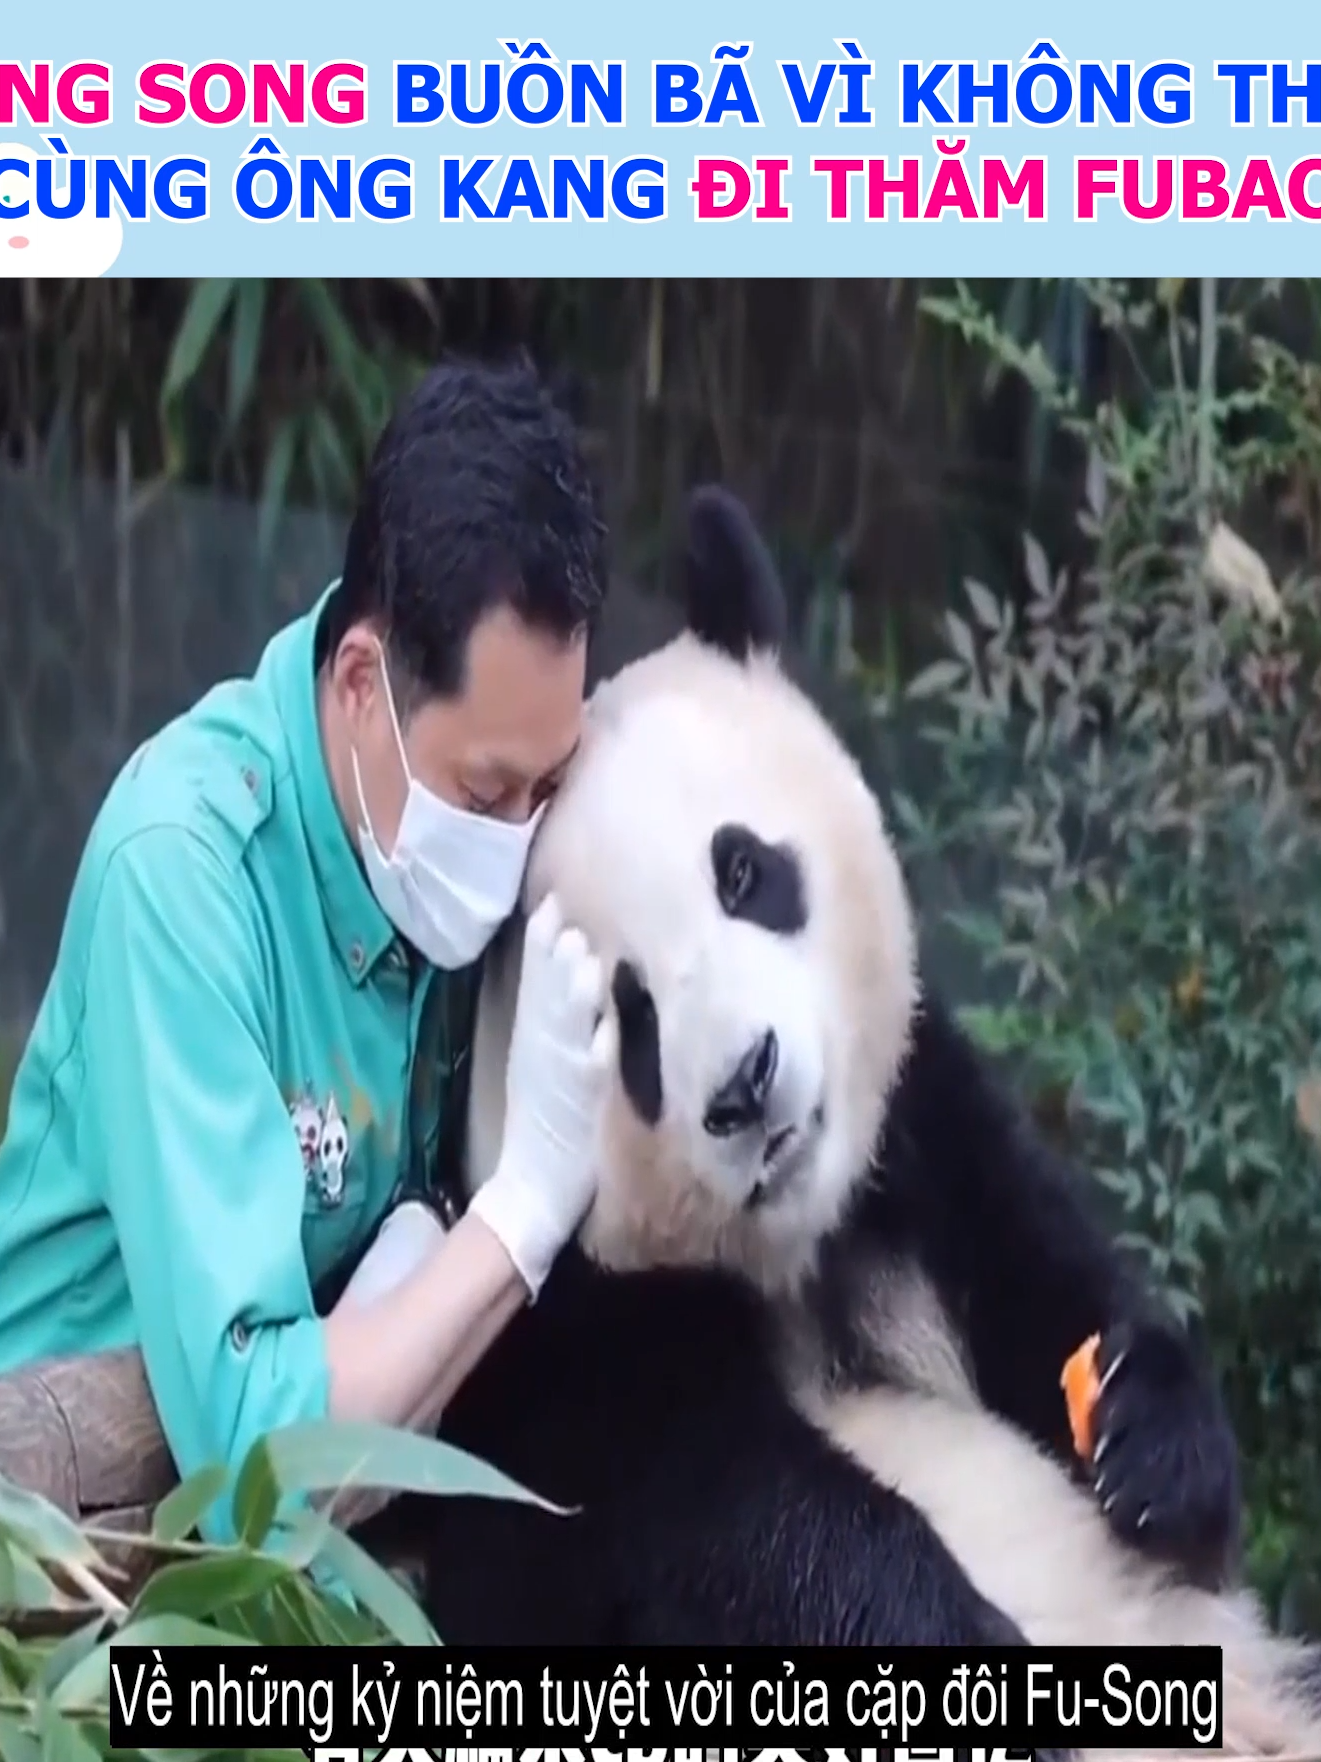 Ông Song hụt hẫng vì không thể cùng ông Kang đến Trung Quốc để chúc mừng sinh nhật cháu gái Fubao  #fubao #baofamily #panda #gautruc